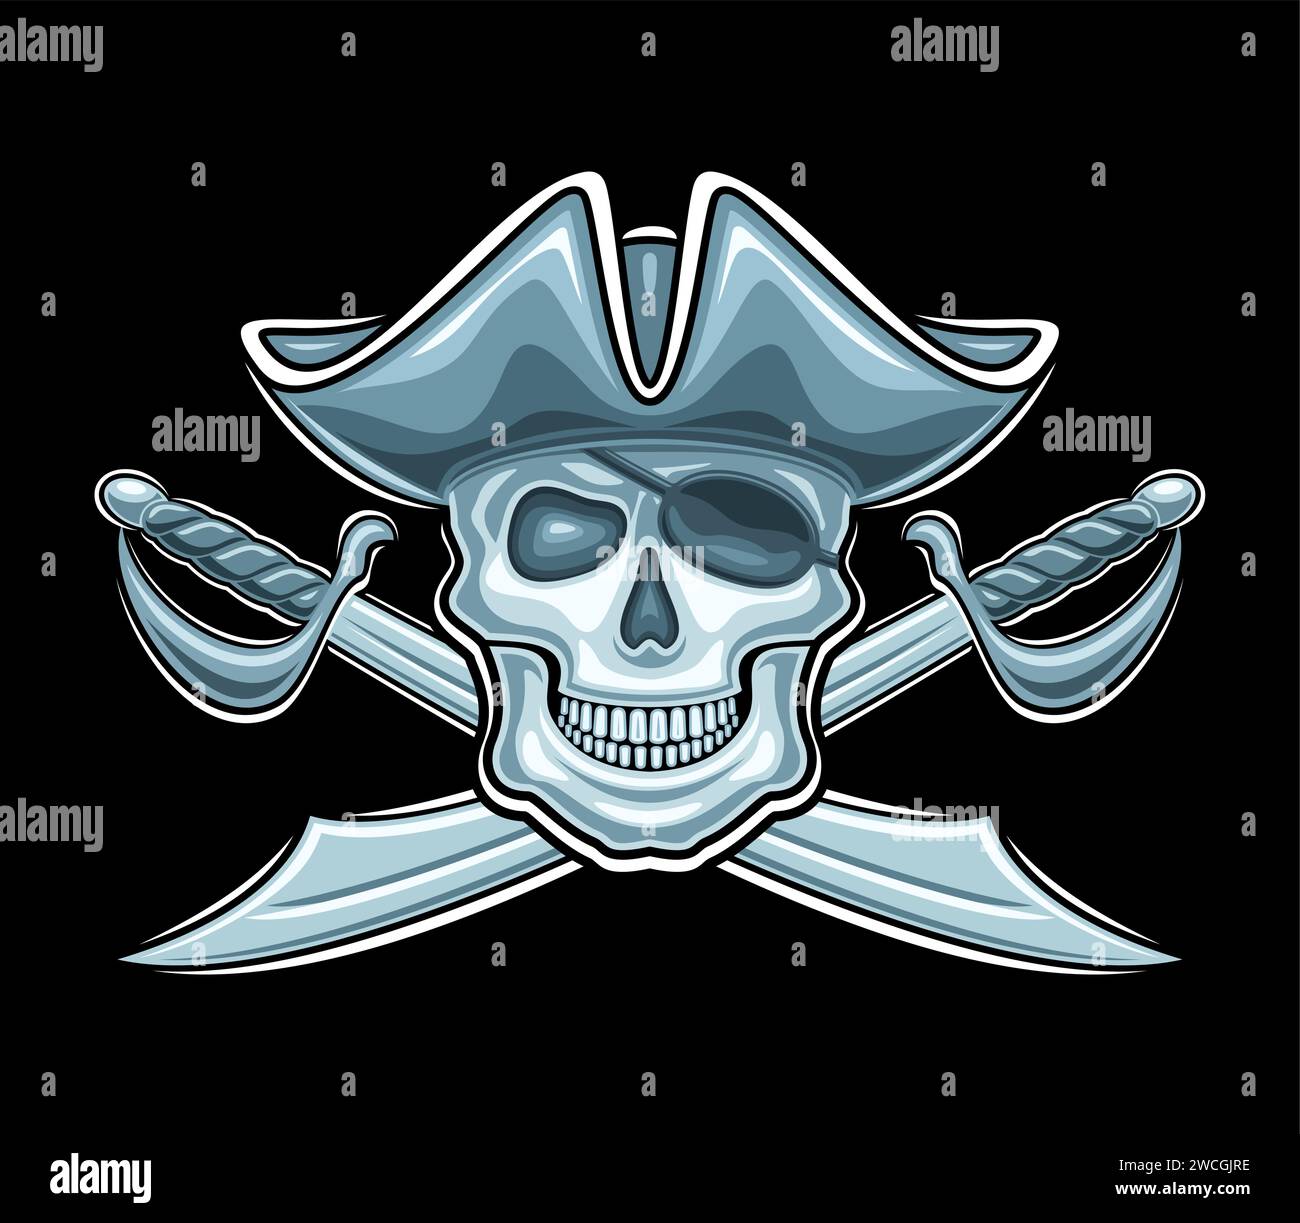 Vektor-Logo für Piratenschädel, dekoratives Etikett mit Illustration des bösen lächelnden Piratenschädels in alter Kappe und gekreuzten Schwertern für eportteam, kreativ Stock Vektor